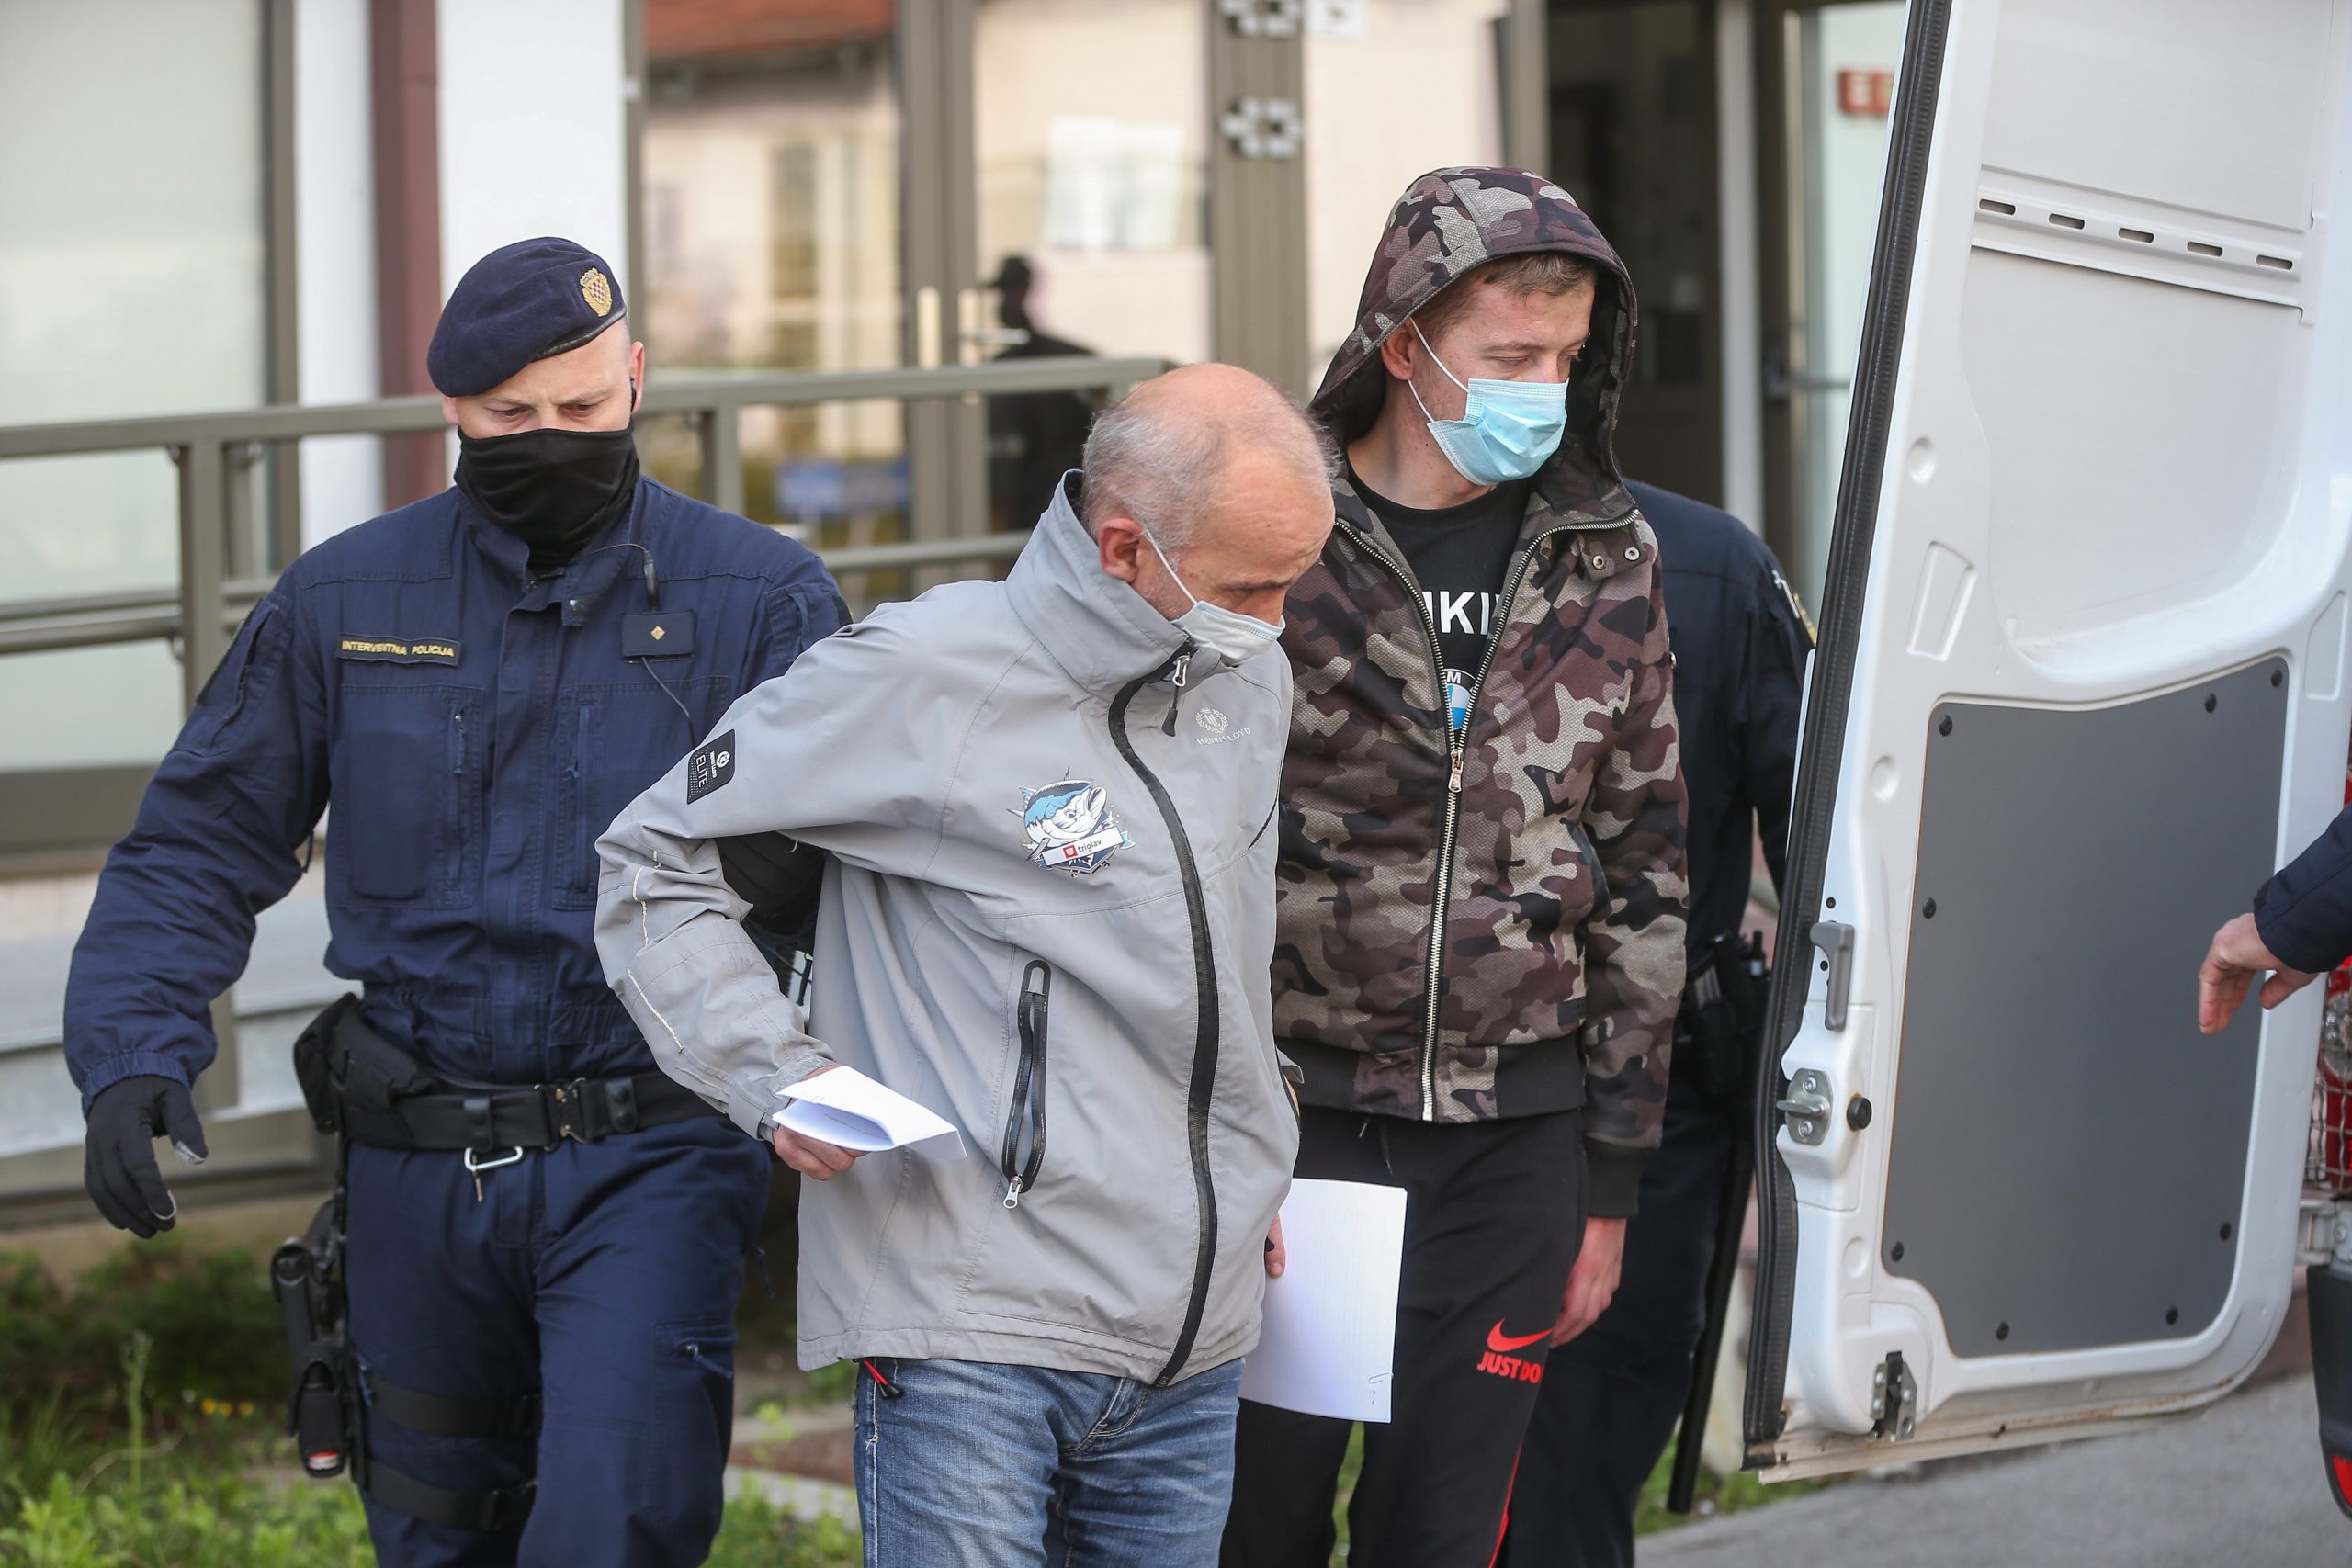 15.04.2021., Velika Gorica - Policija je u Zapresicu uhitila više osoba povezanih s proizvodnjom i preprodajom droge koji su dovedeni na Zupanijski sud u Velikoj Gorici. Photo: Zeljko Lukunic/PIXSELL